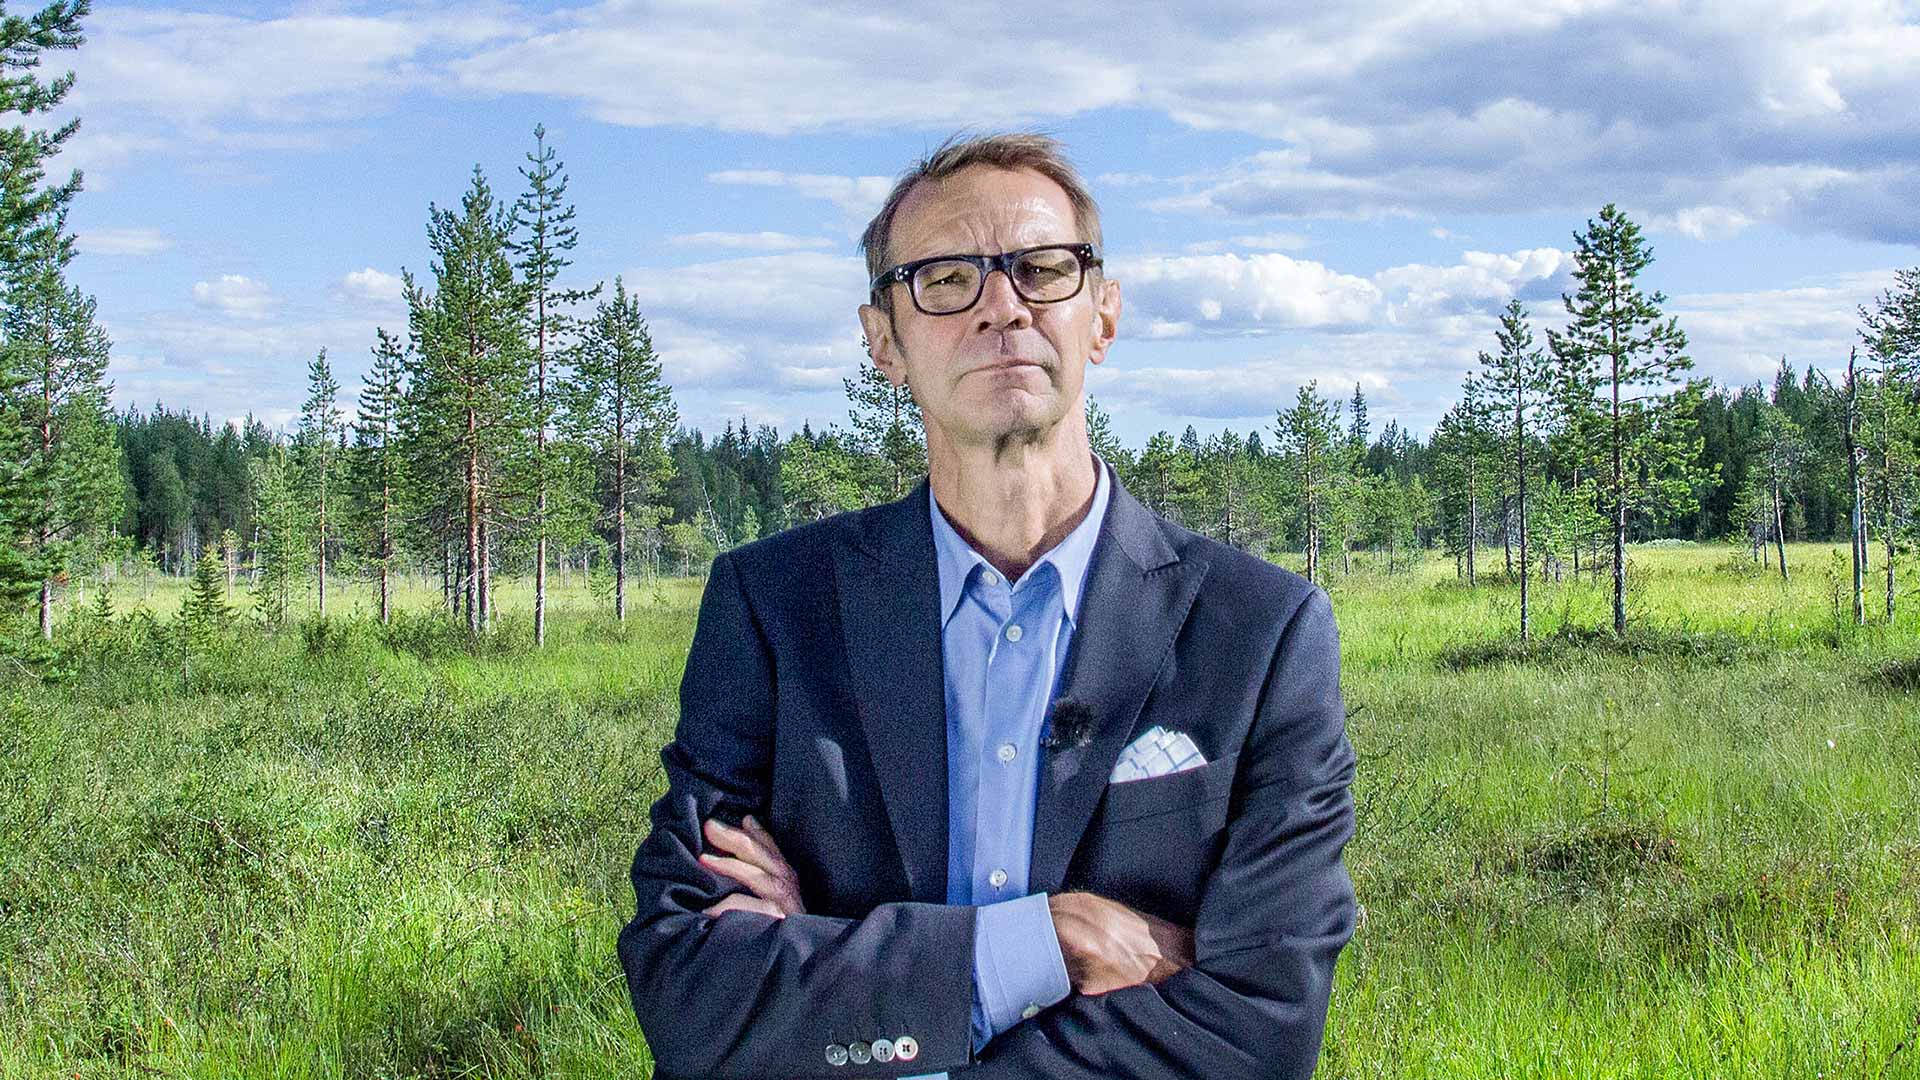 Suomi on suomalainen | Yle Areena